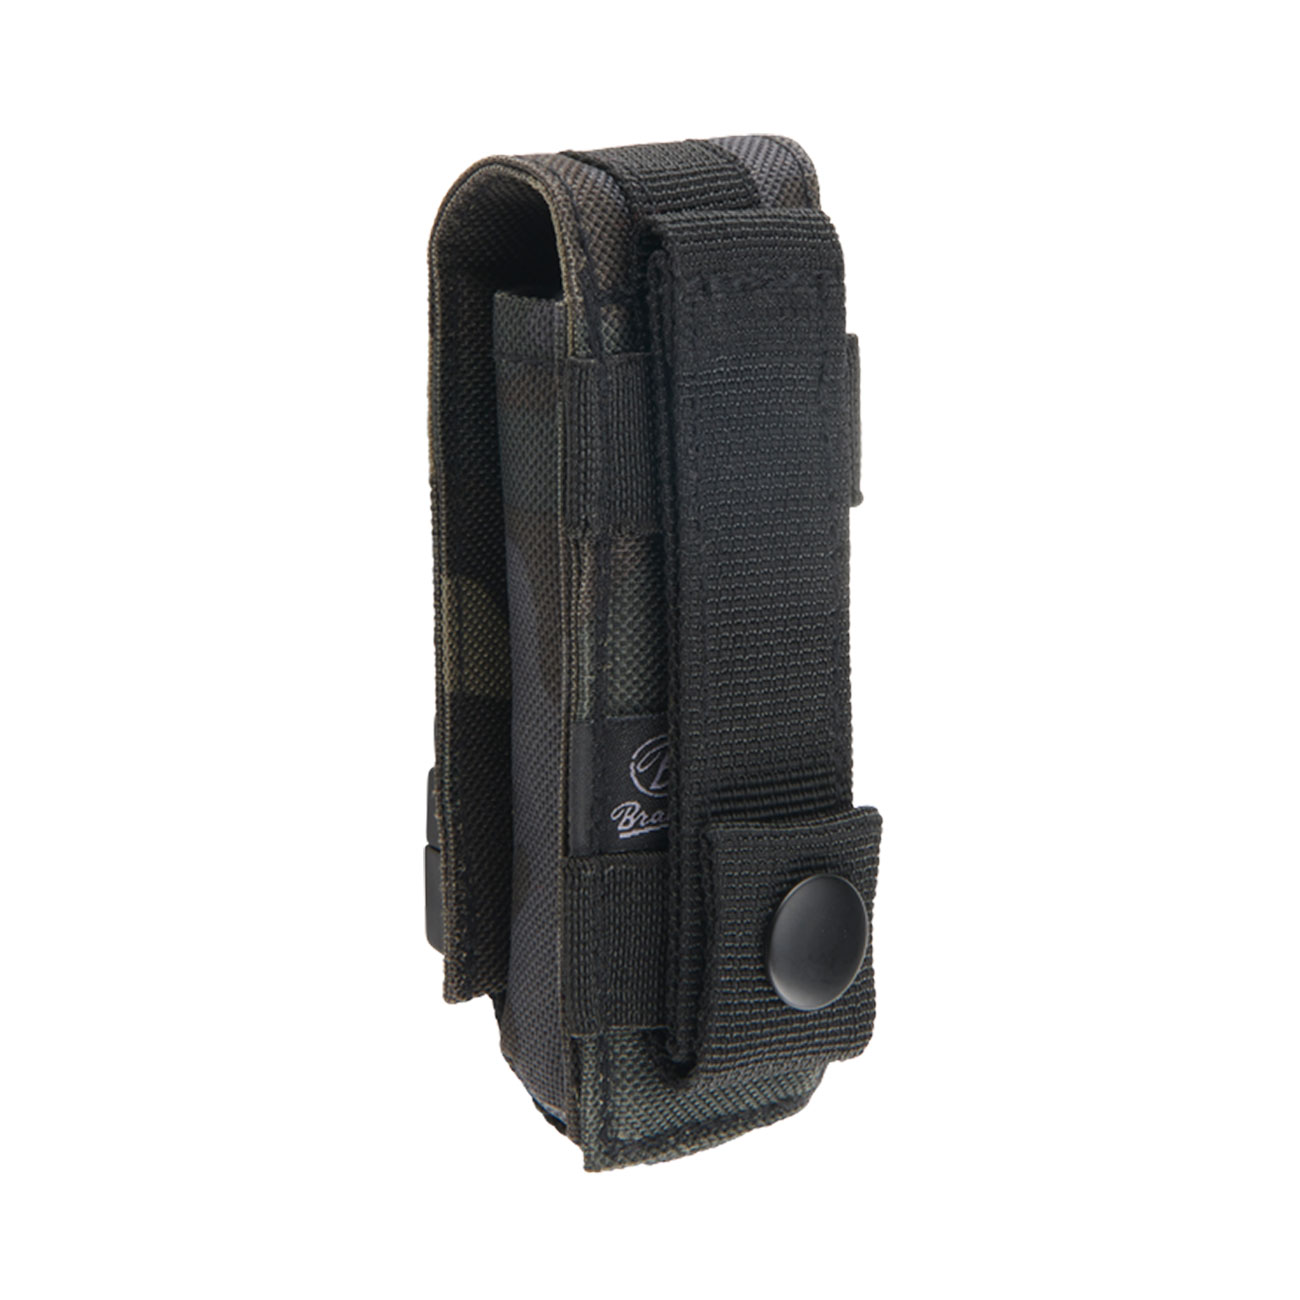 Brandit Universaltasche Molle-System small darkcamo für kleine Ausrüstung 8-13 cm Bild 1